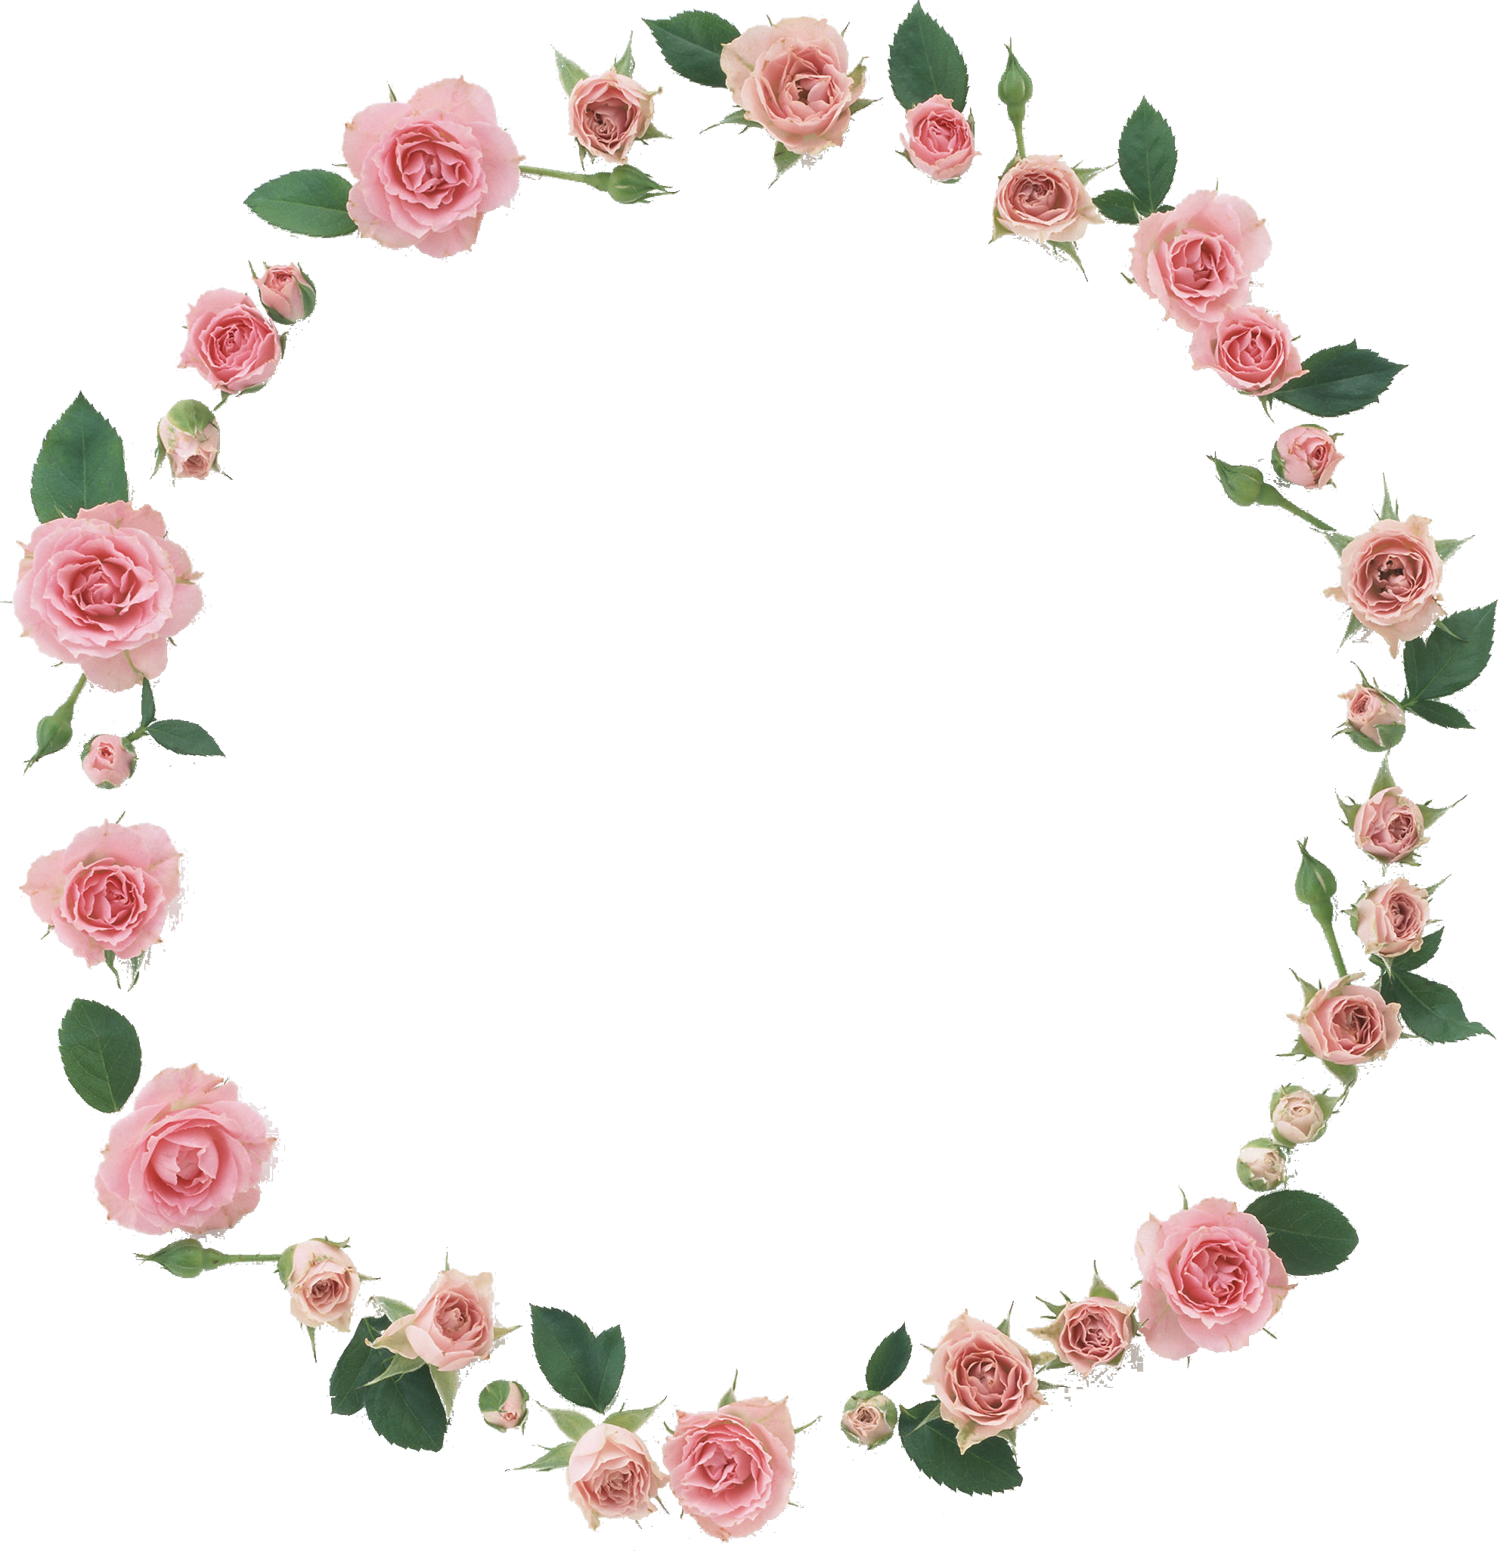 花の写真 フリー素材 フレーム枠no 037 ピンクのバラ 葉 輪